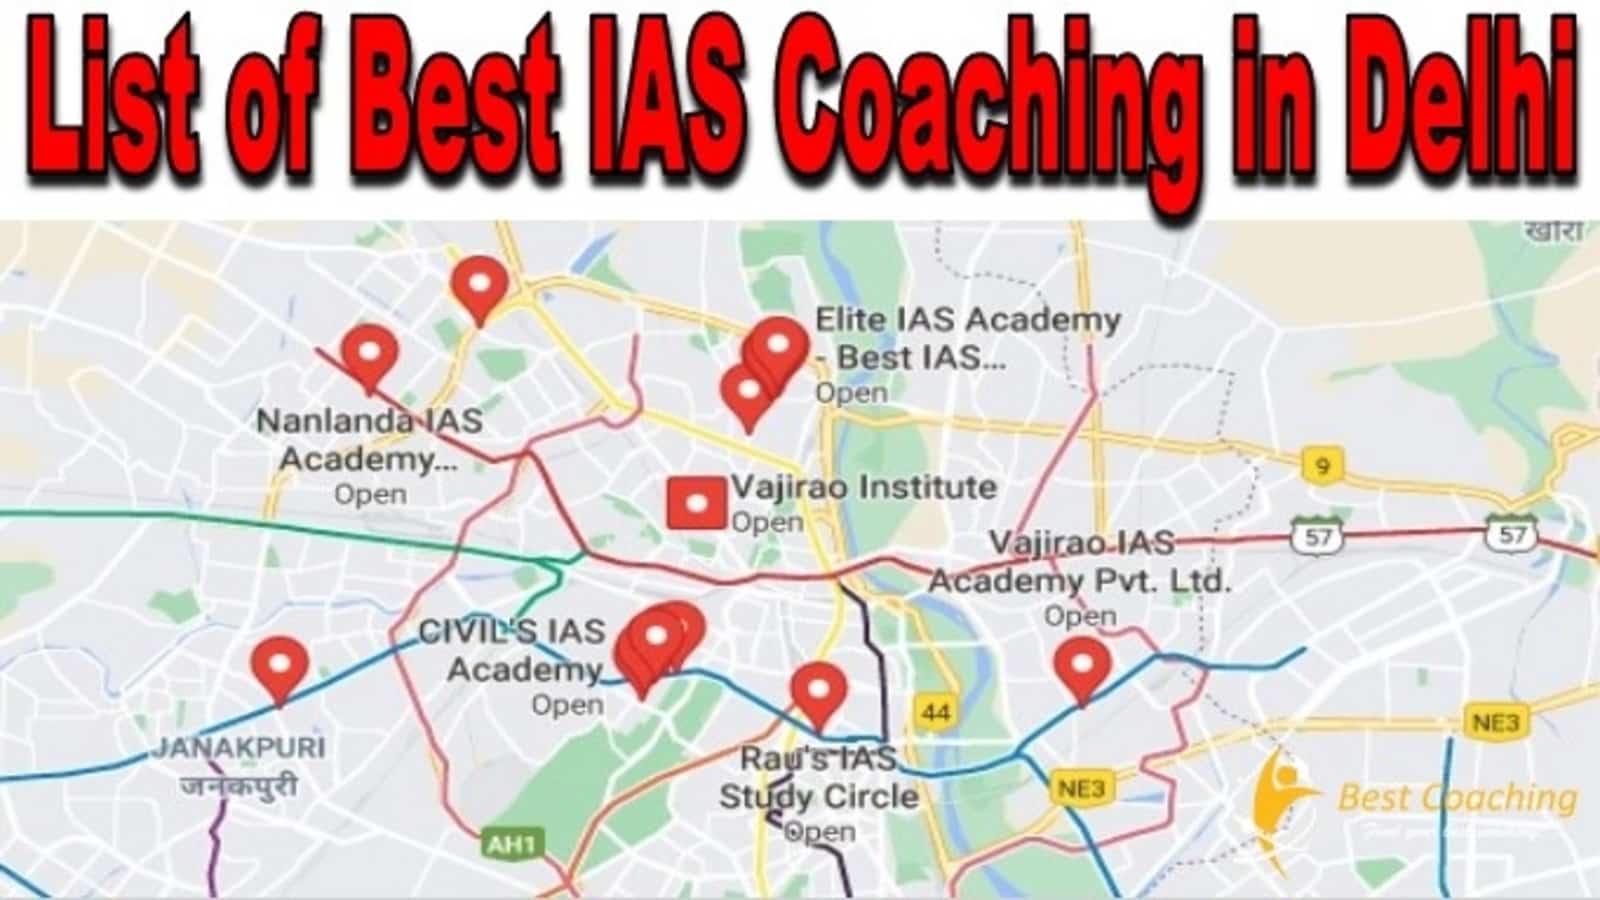 List of best IAS Coaching in Delhi